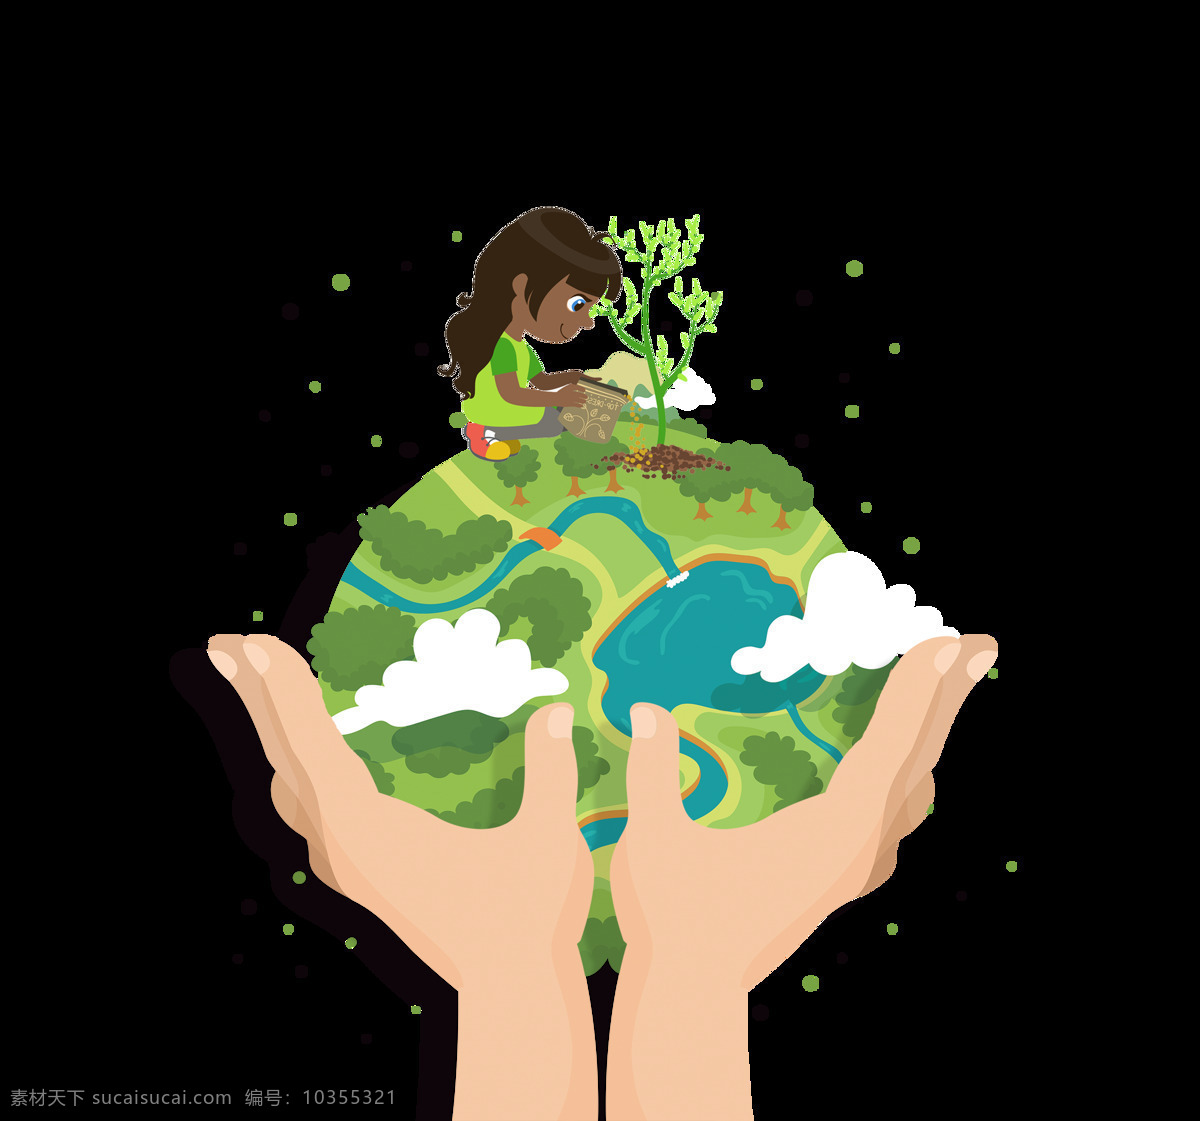 手绘 扁平 卡通 地球 装饰 环保 可爱 树木 手捧地球 女孩 植树